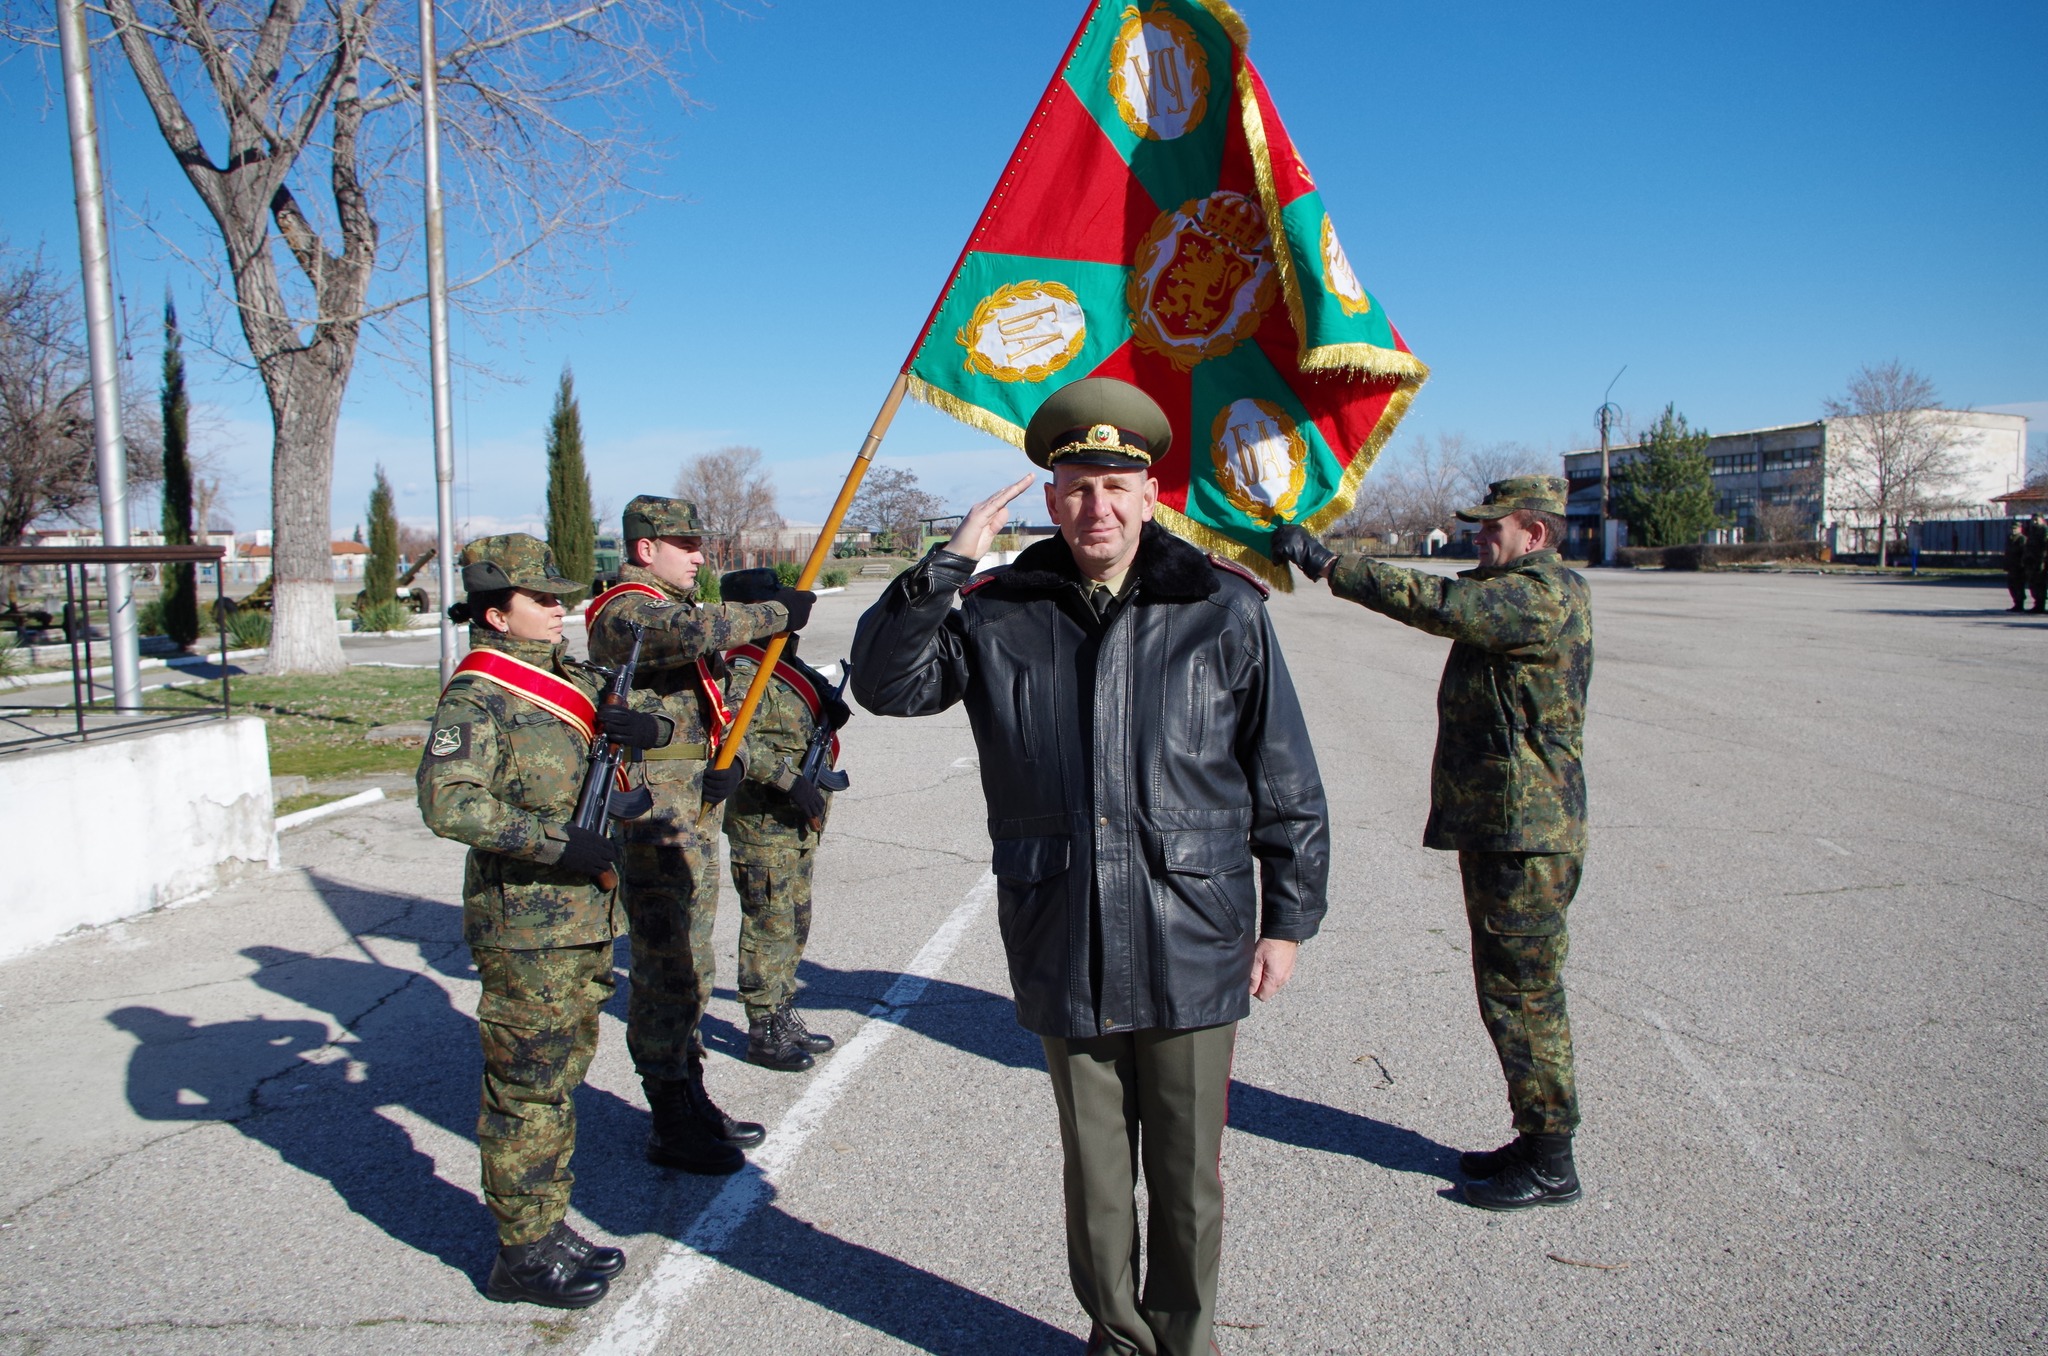 Провеждане на ритуали в Четвърти артилерийски полк – Асеновград по преминаване на военнослужещ в запаса, назначаване на военнослужещи на длъжност и повишаване във военно звание